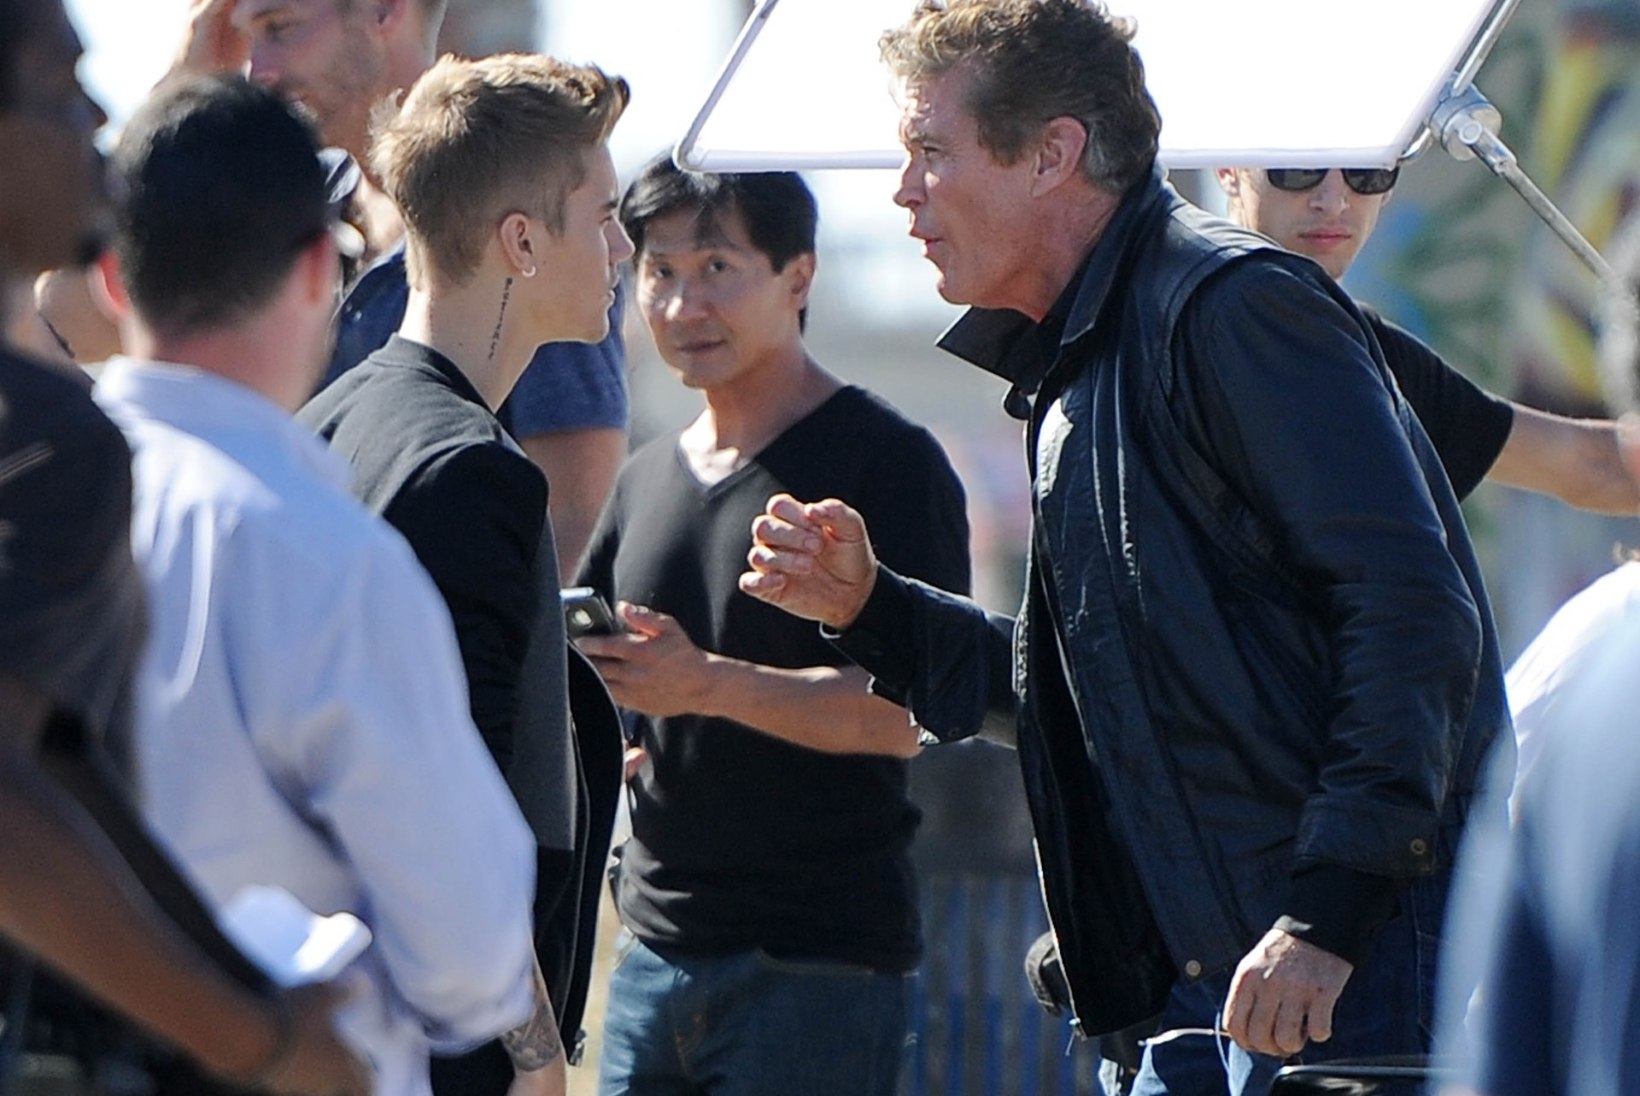 FOTOD: David Hasselhoff embas Justin Bieberit ja jagas talle õpetussõnu